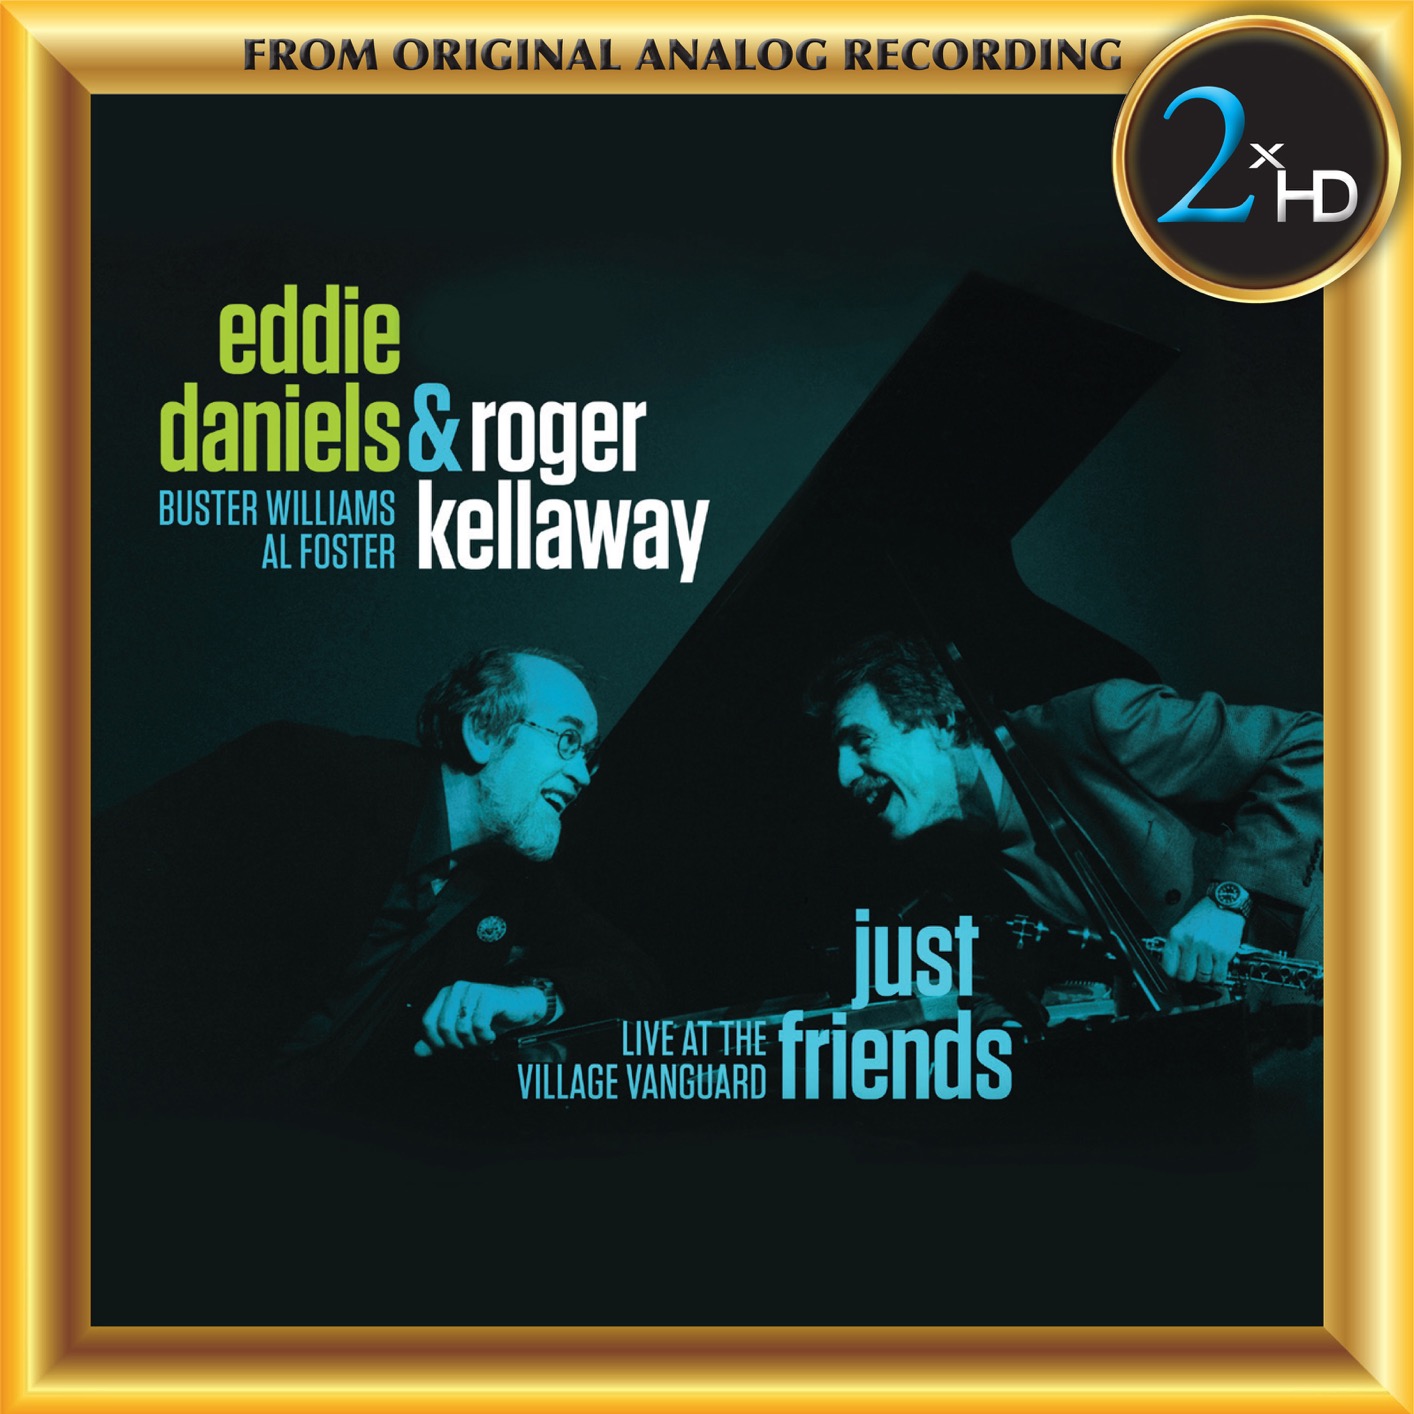 Eddie Daniels & Roger Kellaway – Just Friends – Live at the Village Vanguard (2018) [FLAC 24bit/192kHz]